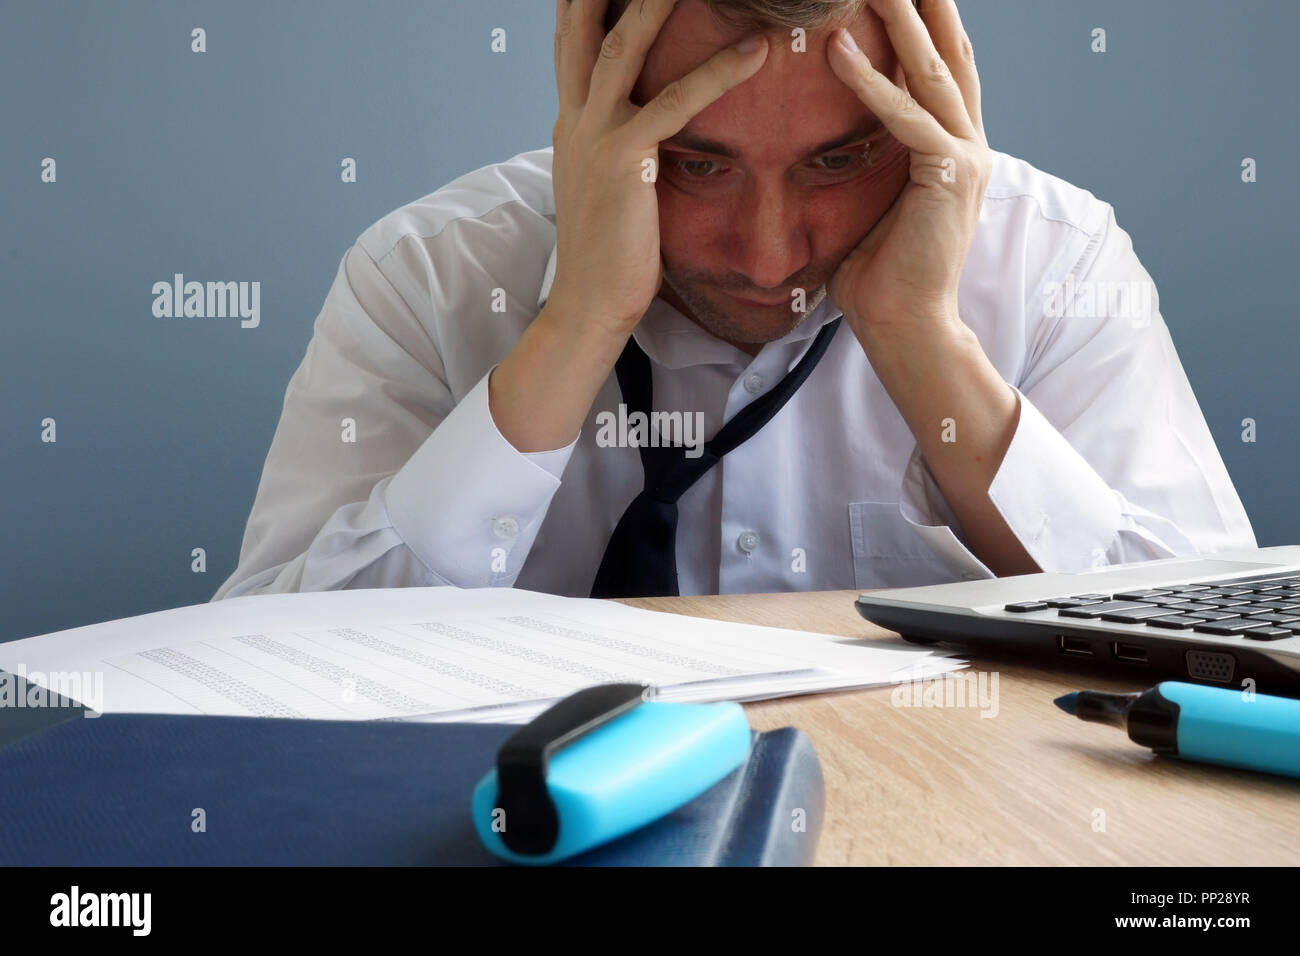 Stress Management. Überarbeitet und erschöpft Mann im Büro. Stockfoto